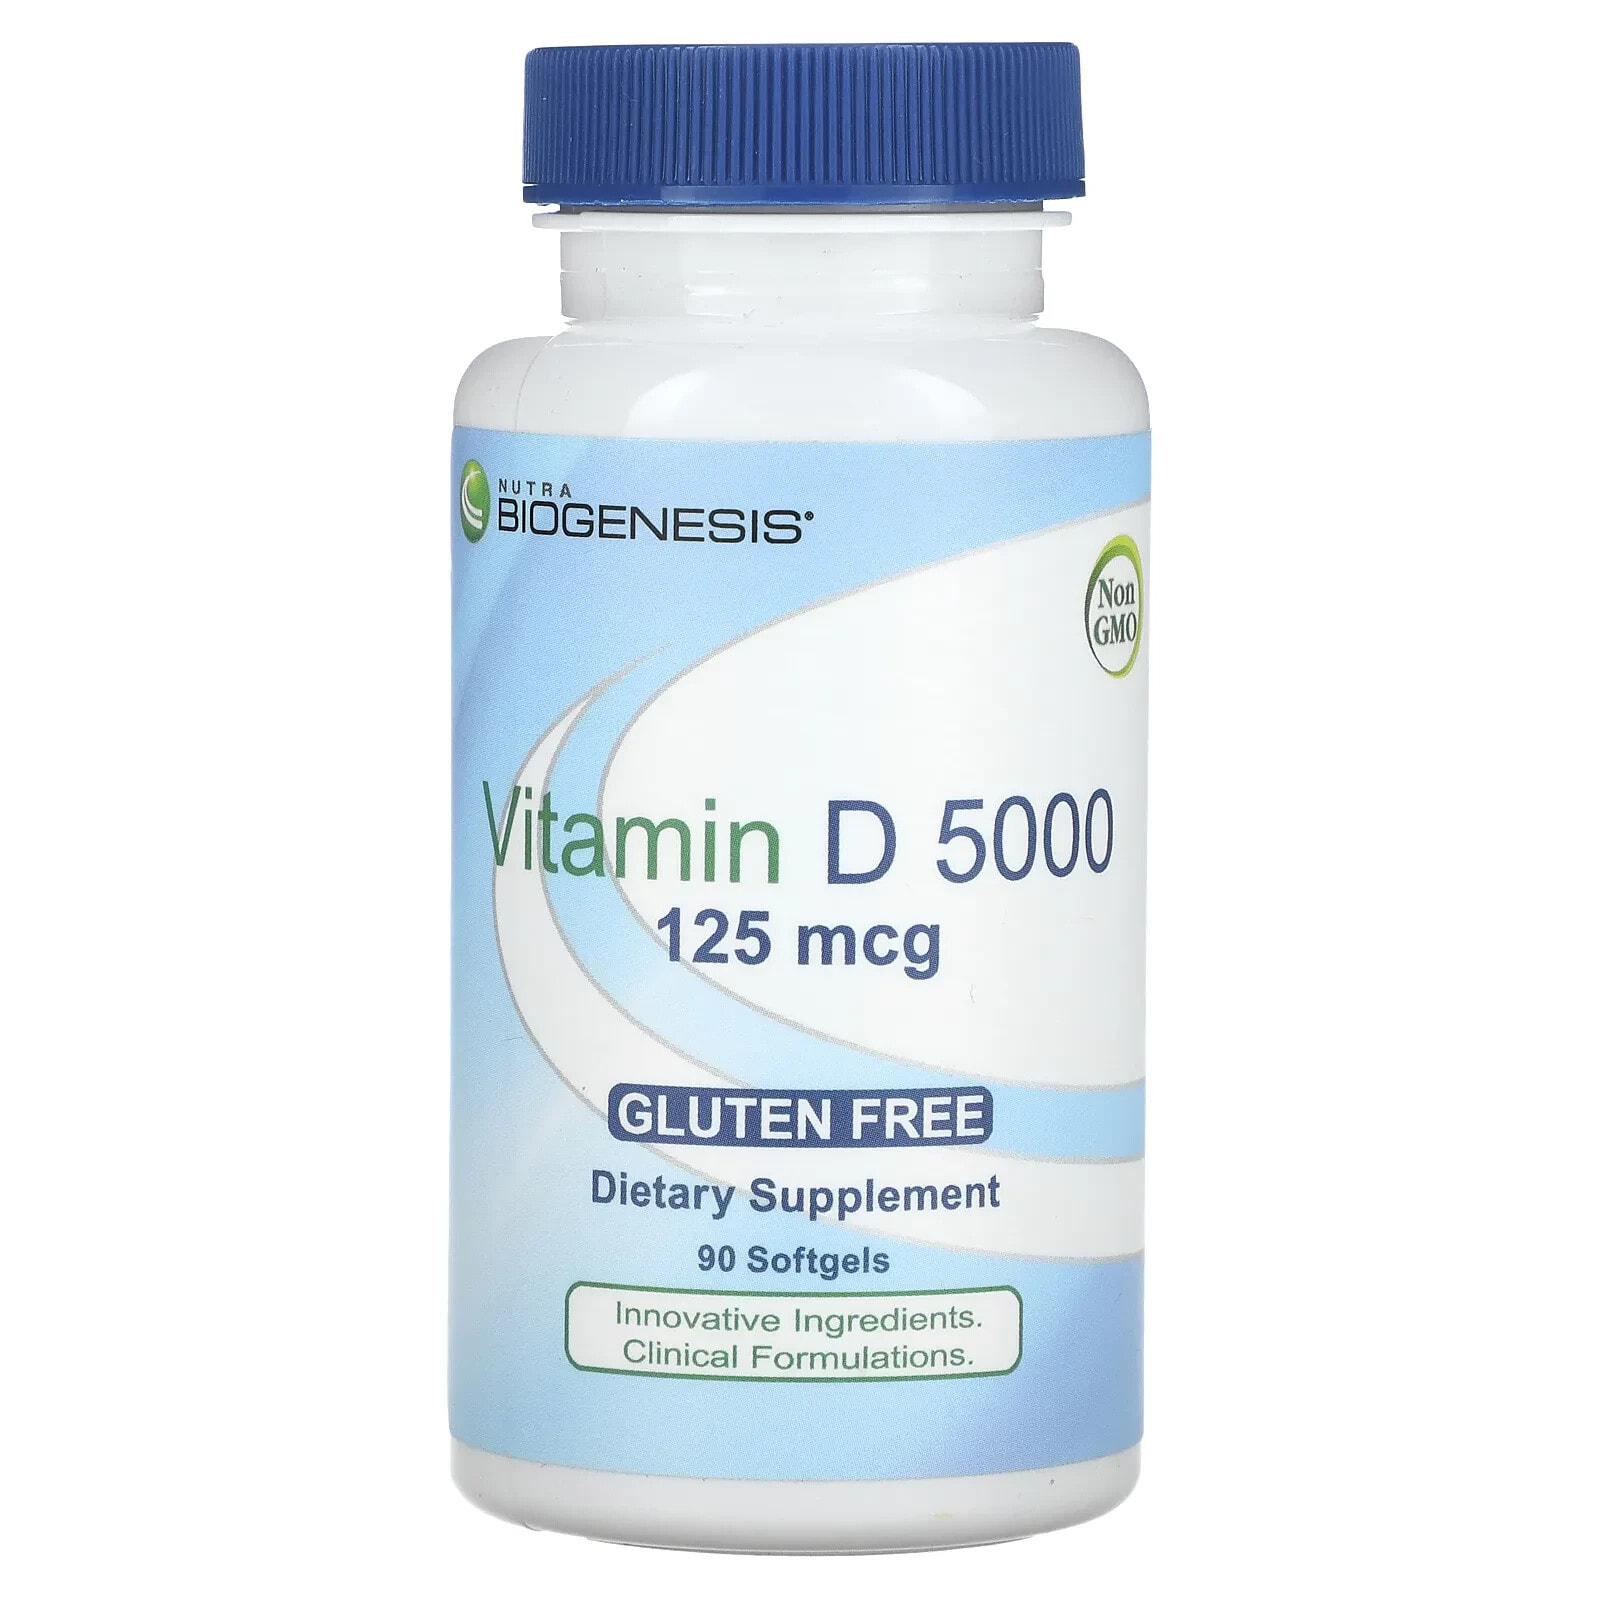 Vitamin D 5000, 125 mcg, 90 Softgels